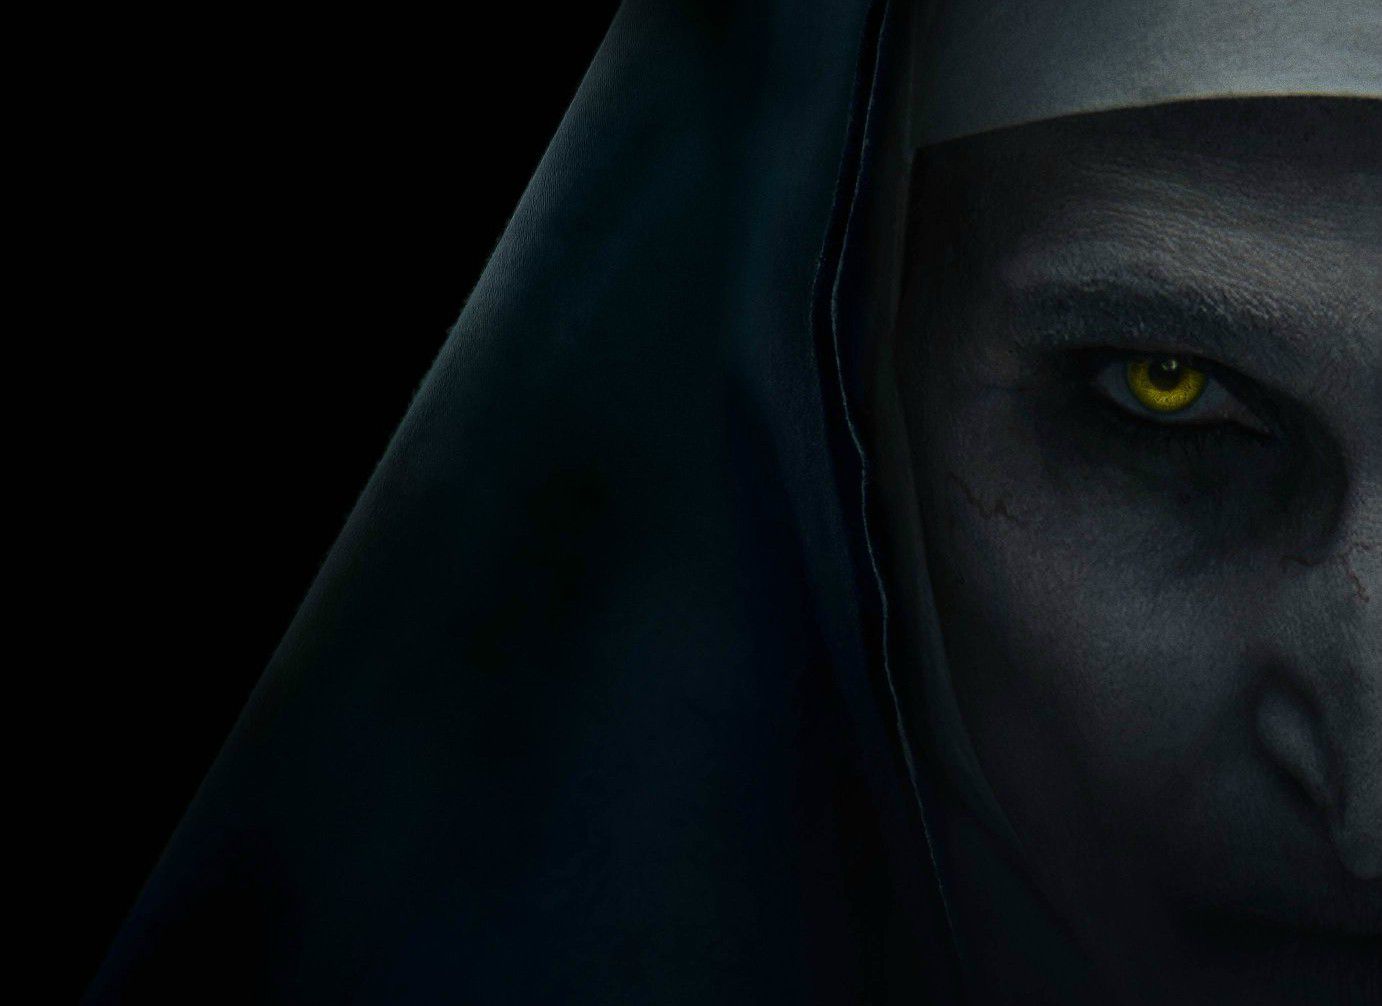 Antevisão MOTELx 2018: ‘The Nun’ fará as honras de abertura